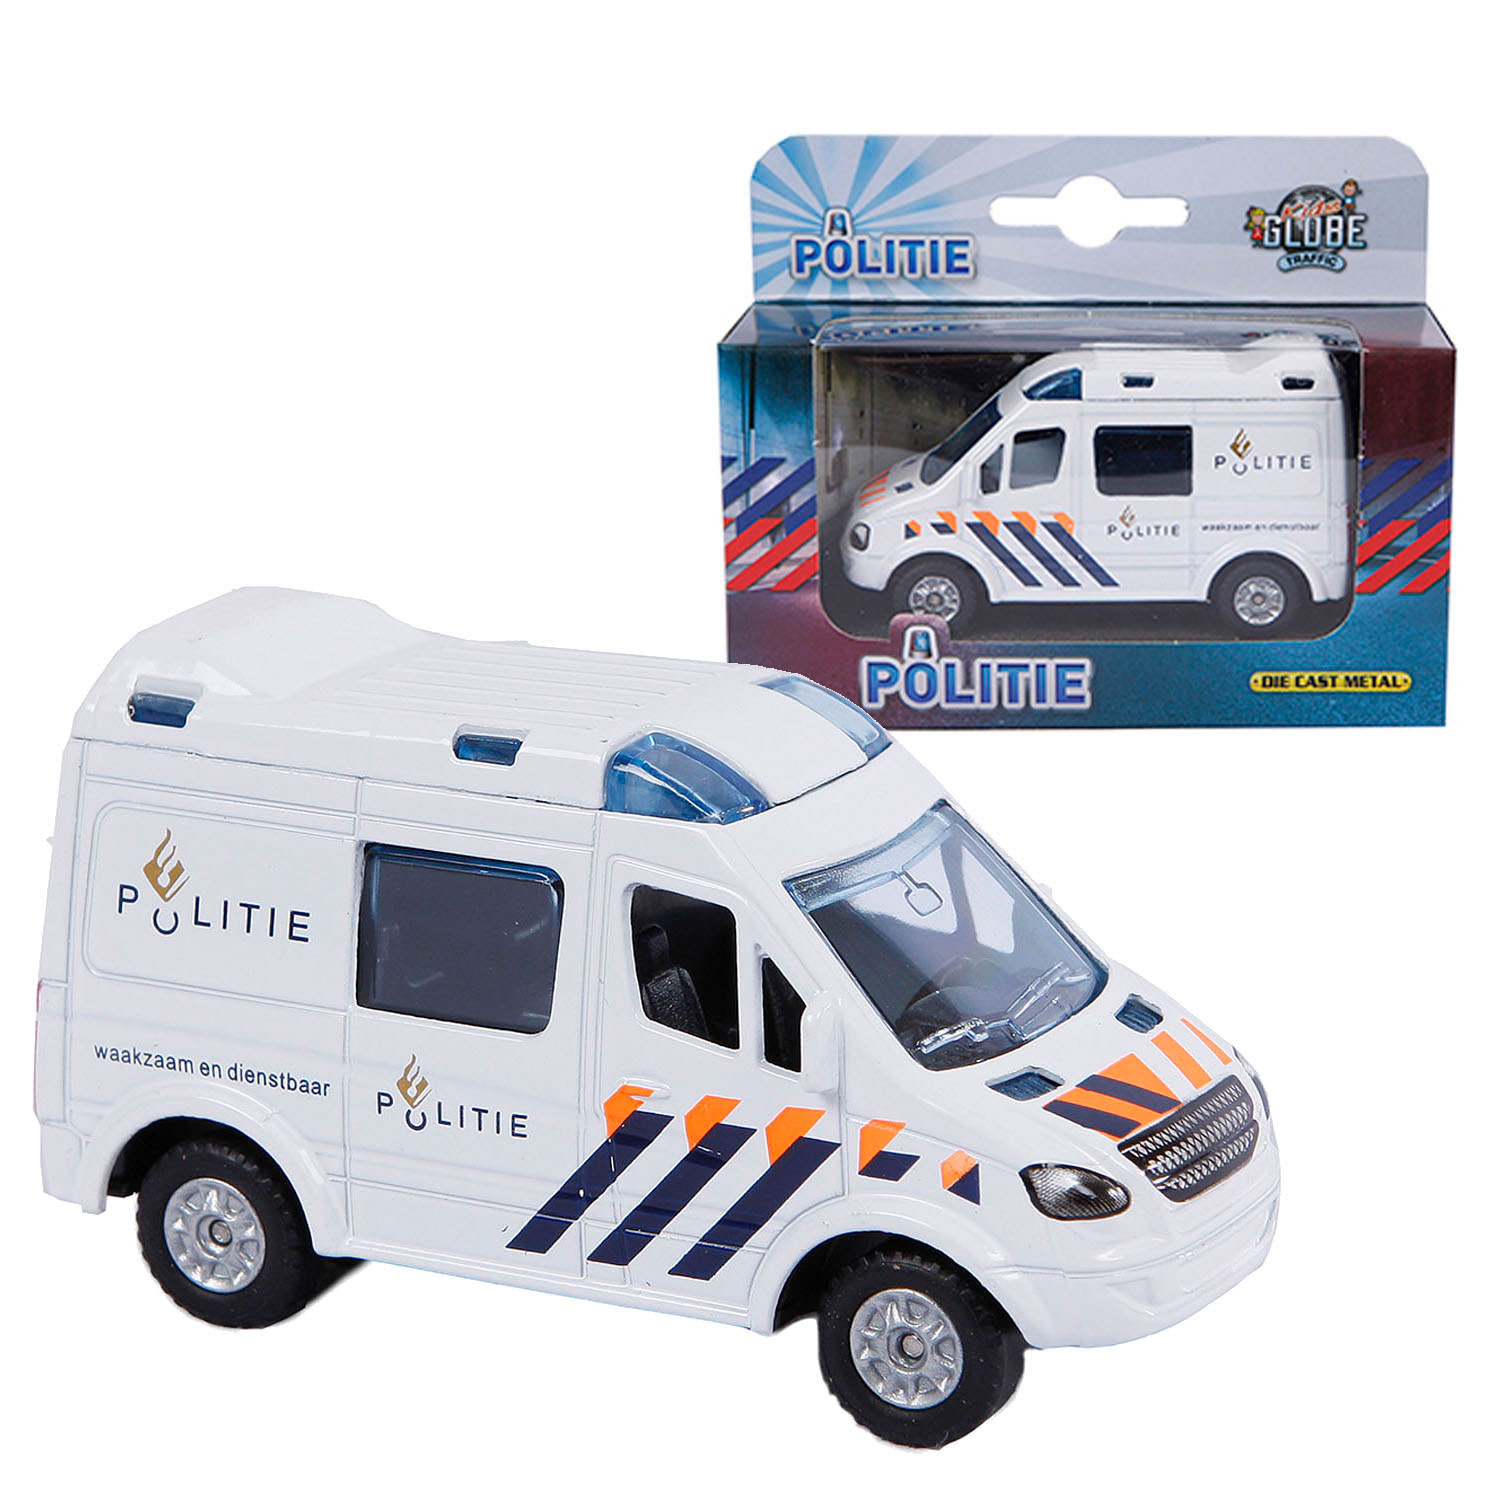 Kids Globe Druckguss-Polizeiauto NL, 8 cm